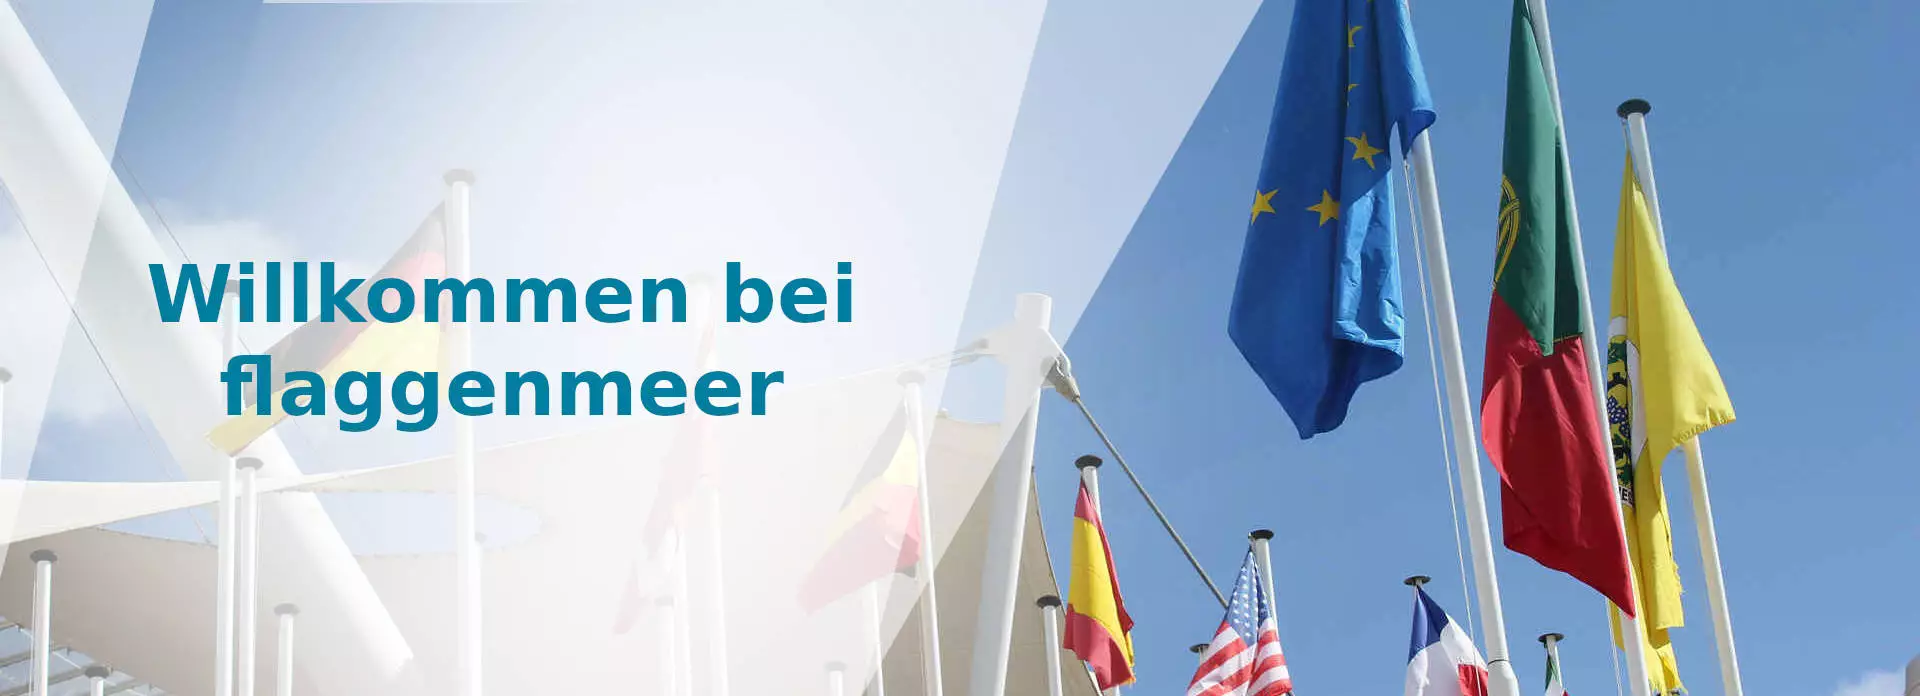 Banner mit dem Text 'Willkommen bei flaggenmeer', mehrere Flaggen an Flaggenmasten, weiße Schattierungen auf der linken Seite, repräsentiert die Vielfalt und Qualität bei flaggenmeer